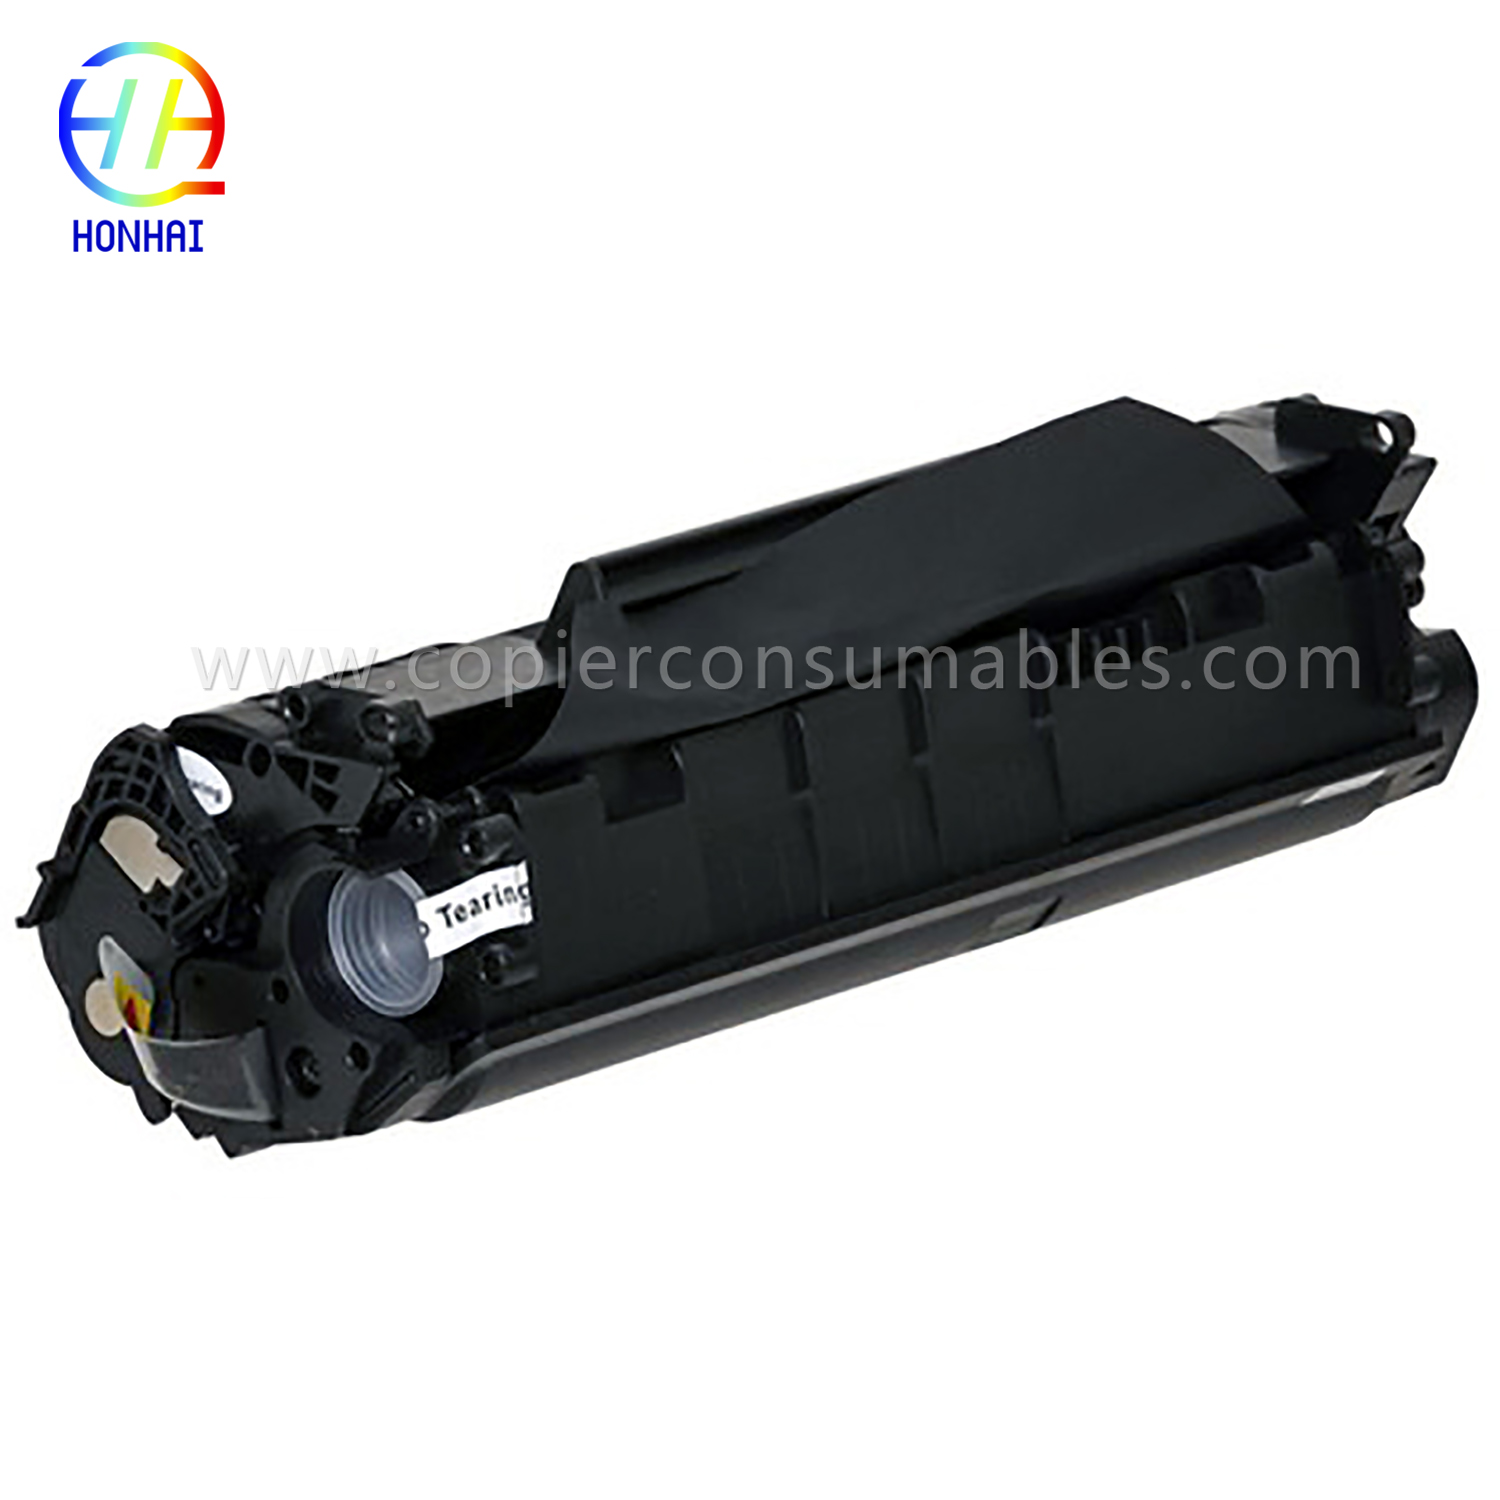 Black Toner Cartridge for HP LaserJet 1010 1012 1015 1018 1020 3015 3020 3030 3050 3052 3055 M1005MFP M1319f Q2612A